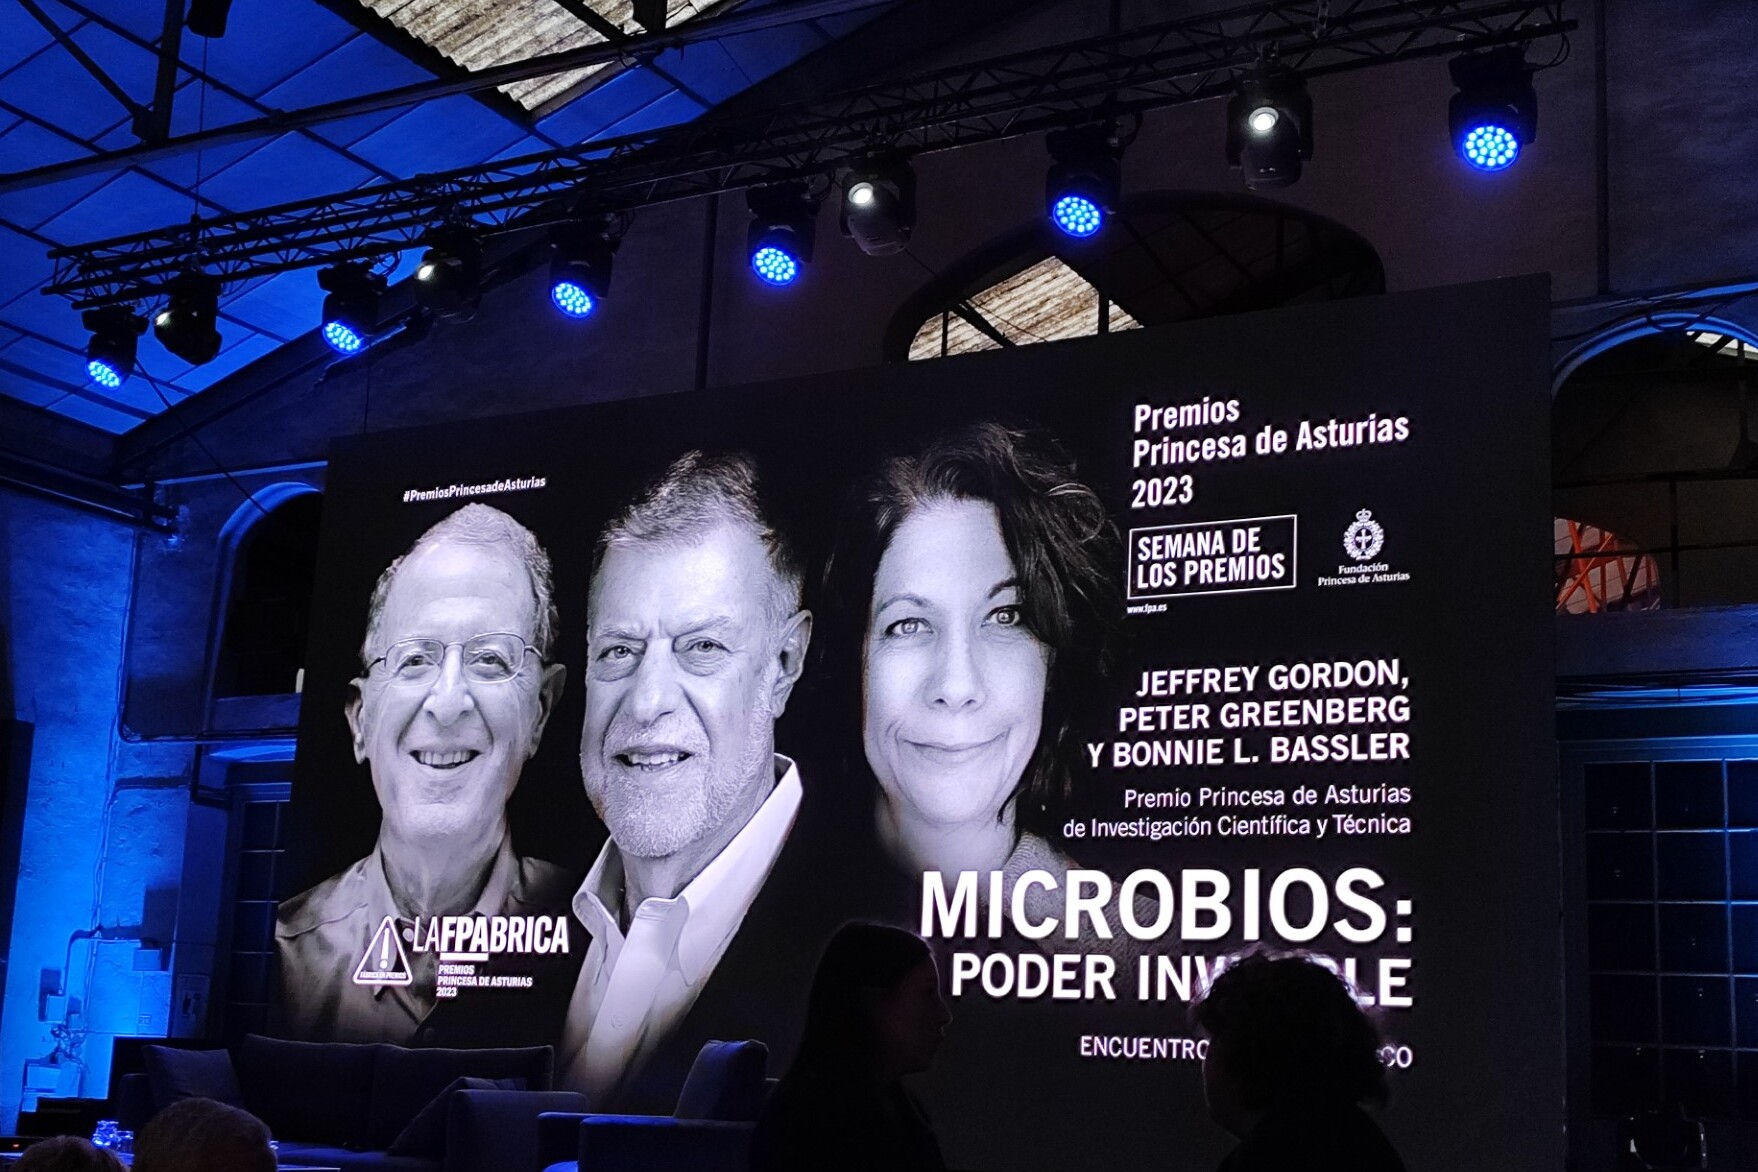 Microviable atendió al encuentro con el público de Bonnie Bassler y Peter Greenberg, Premio Princesa de Asturias 2023 de Investigación Científica y Técnica.